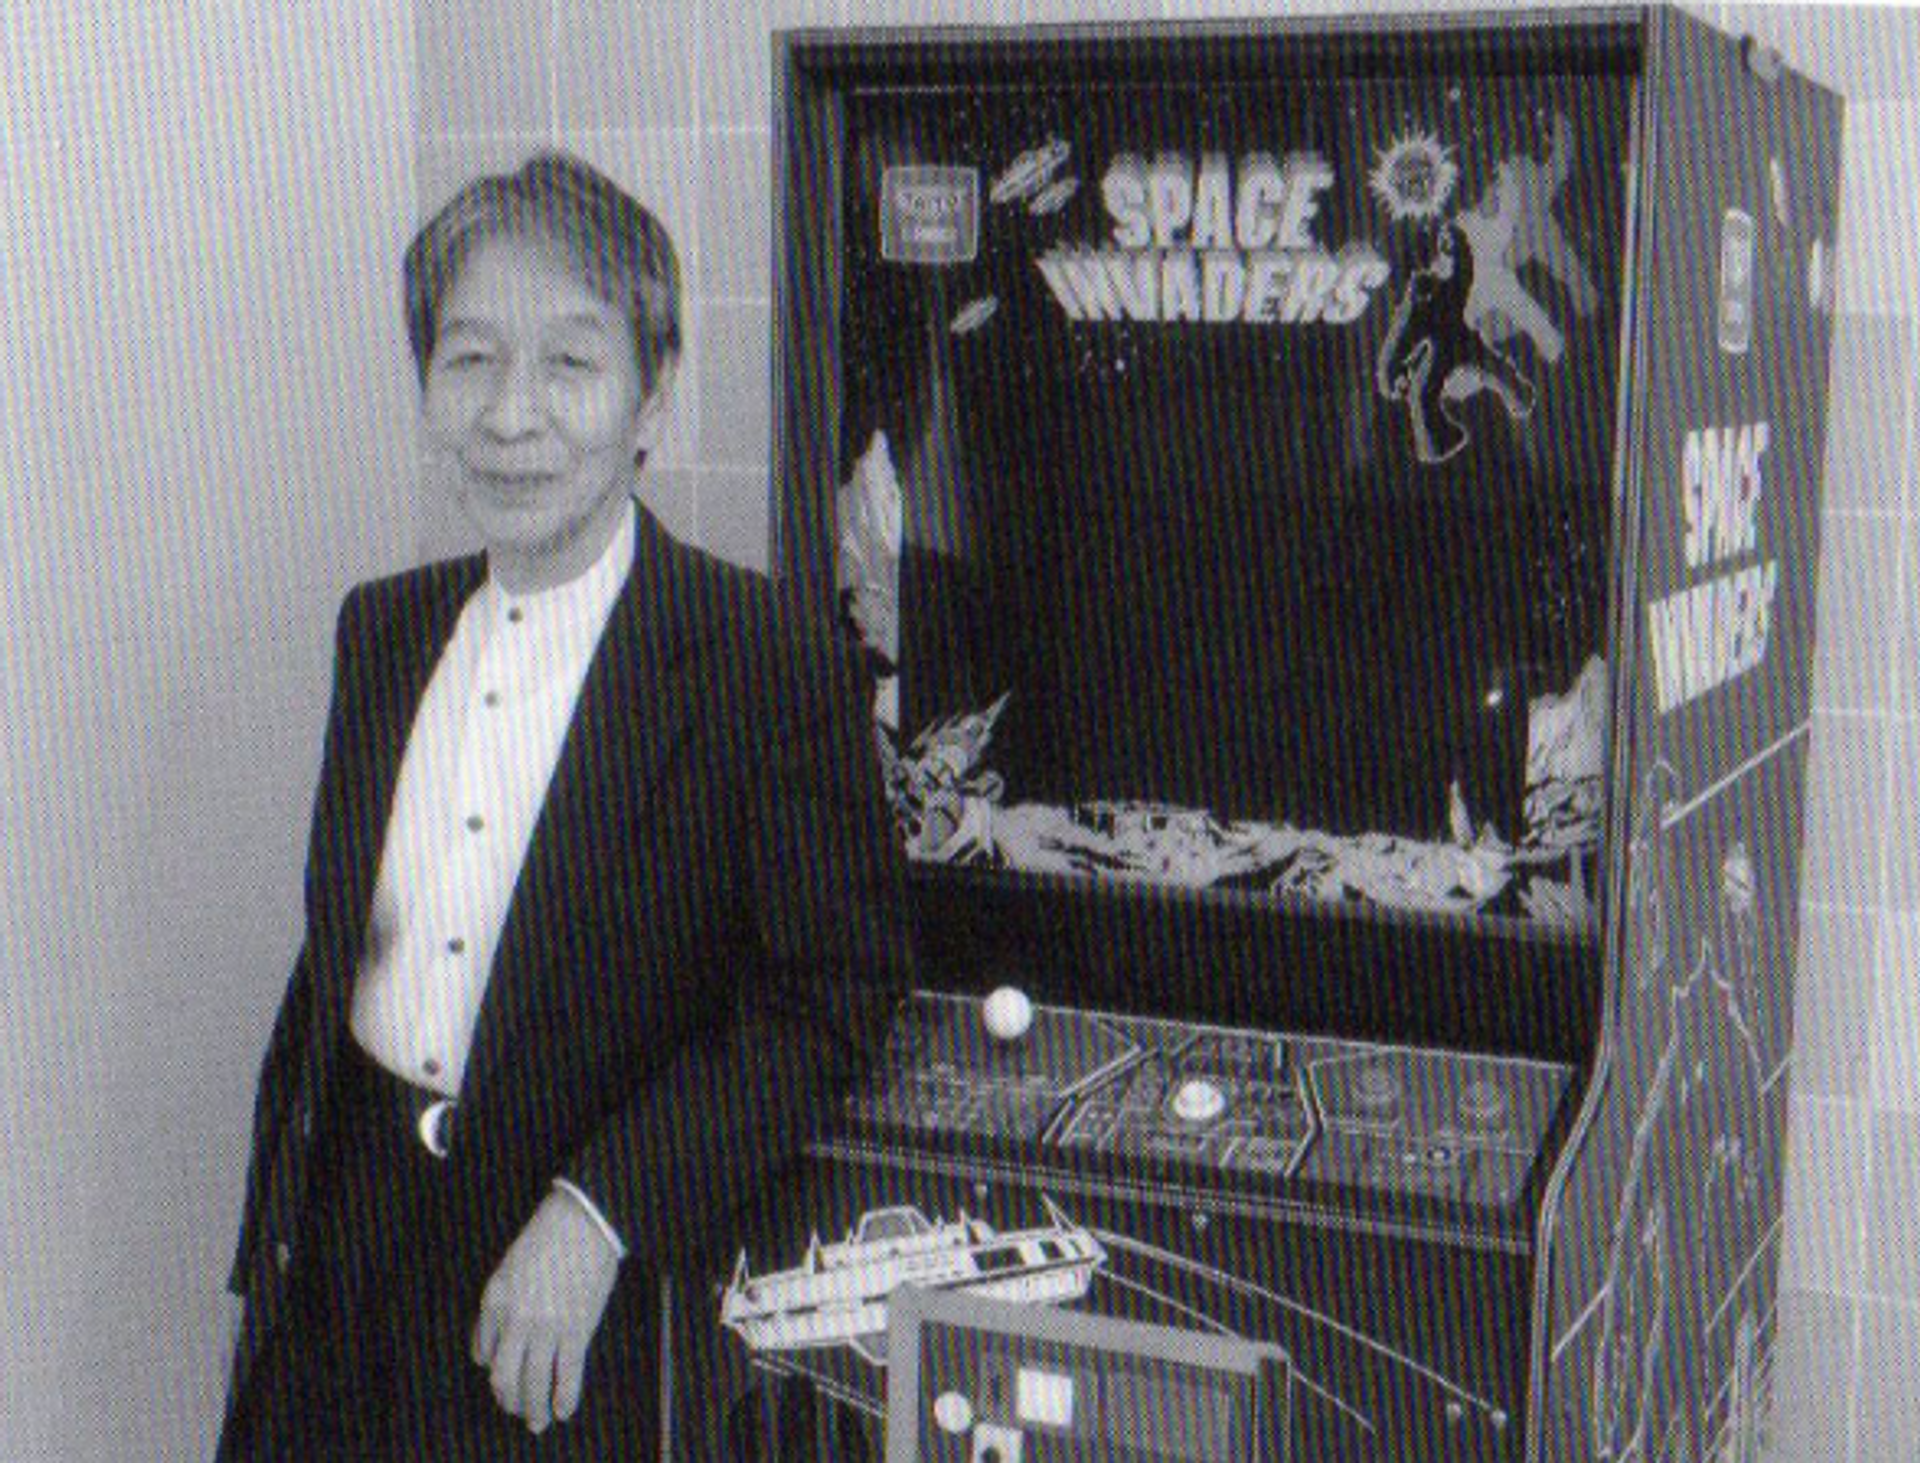 Tomohiro Nishikado and Space Invaders Arcade Game